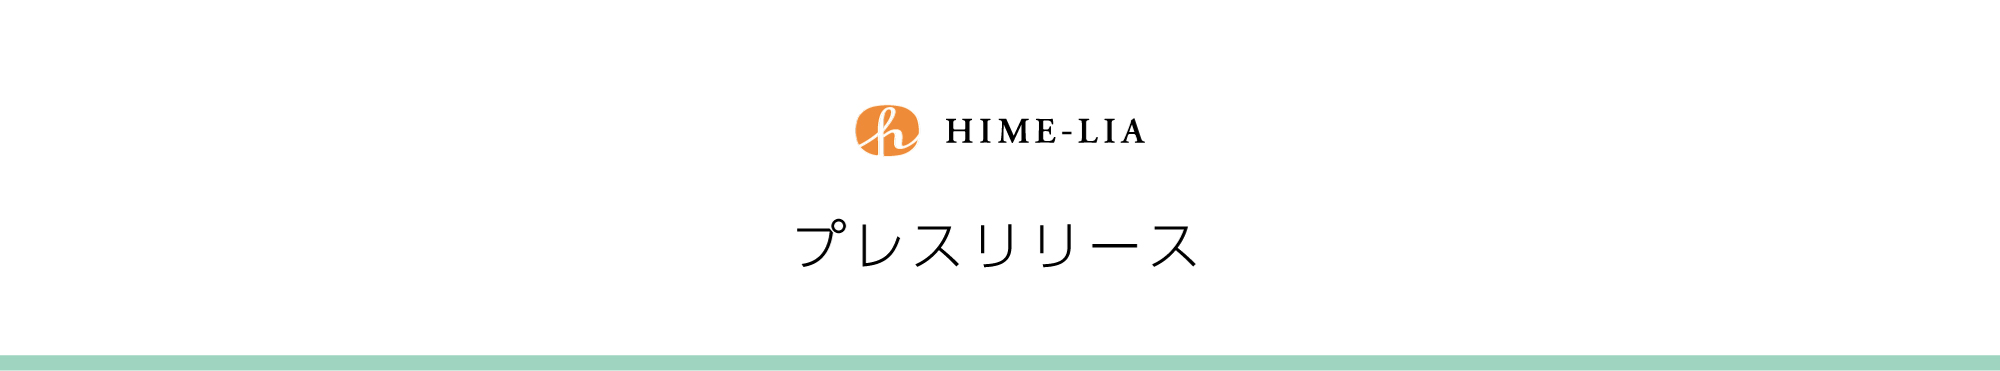 プレスリリース:日本初のクラフトオリーブオイル専門メーカー「ヒメリア」がプレミアムシリーズを新発売